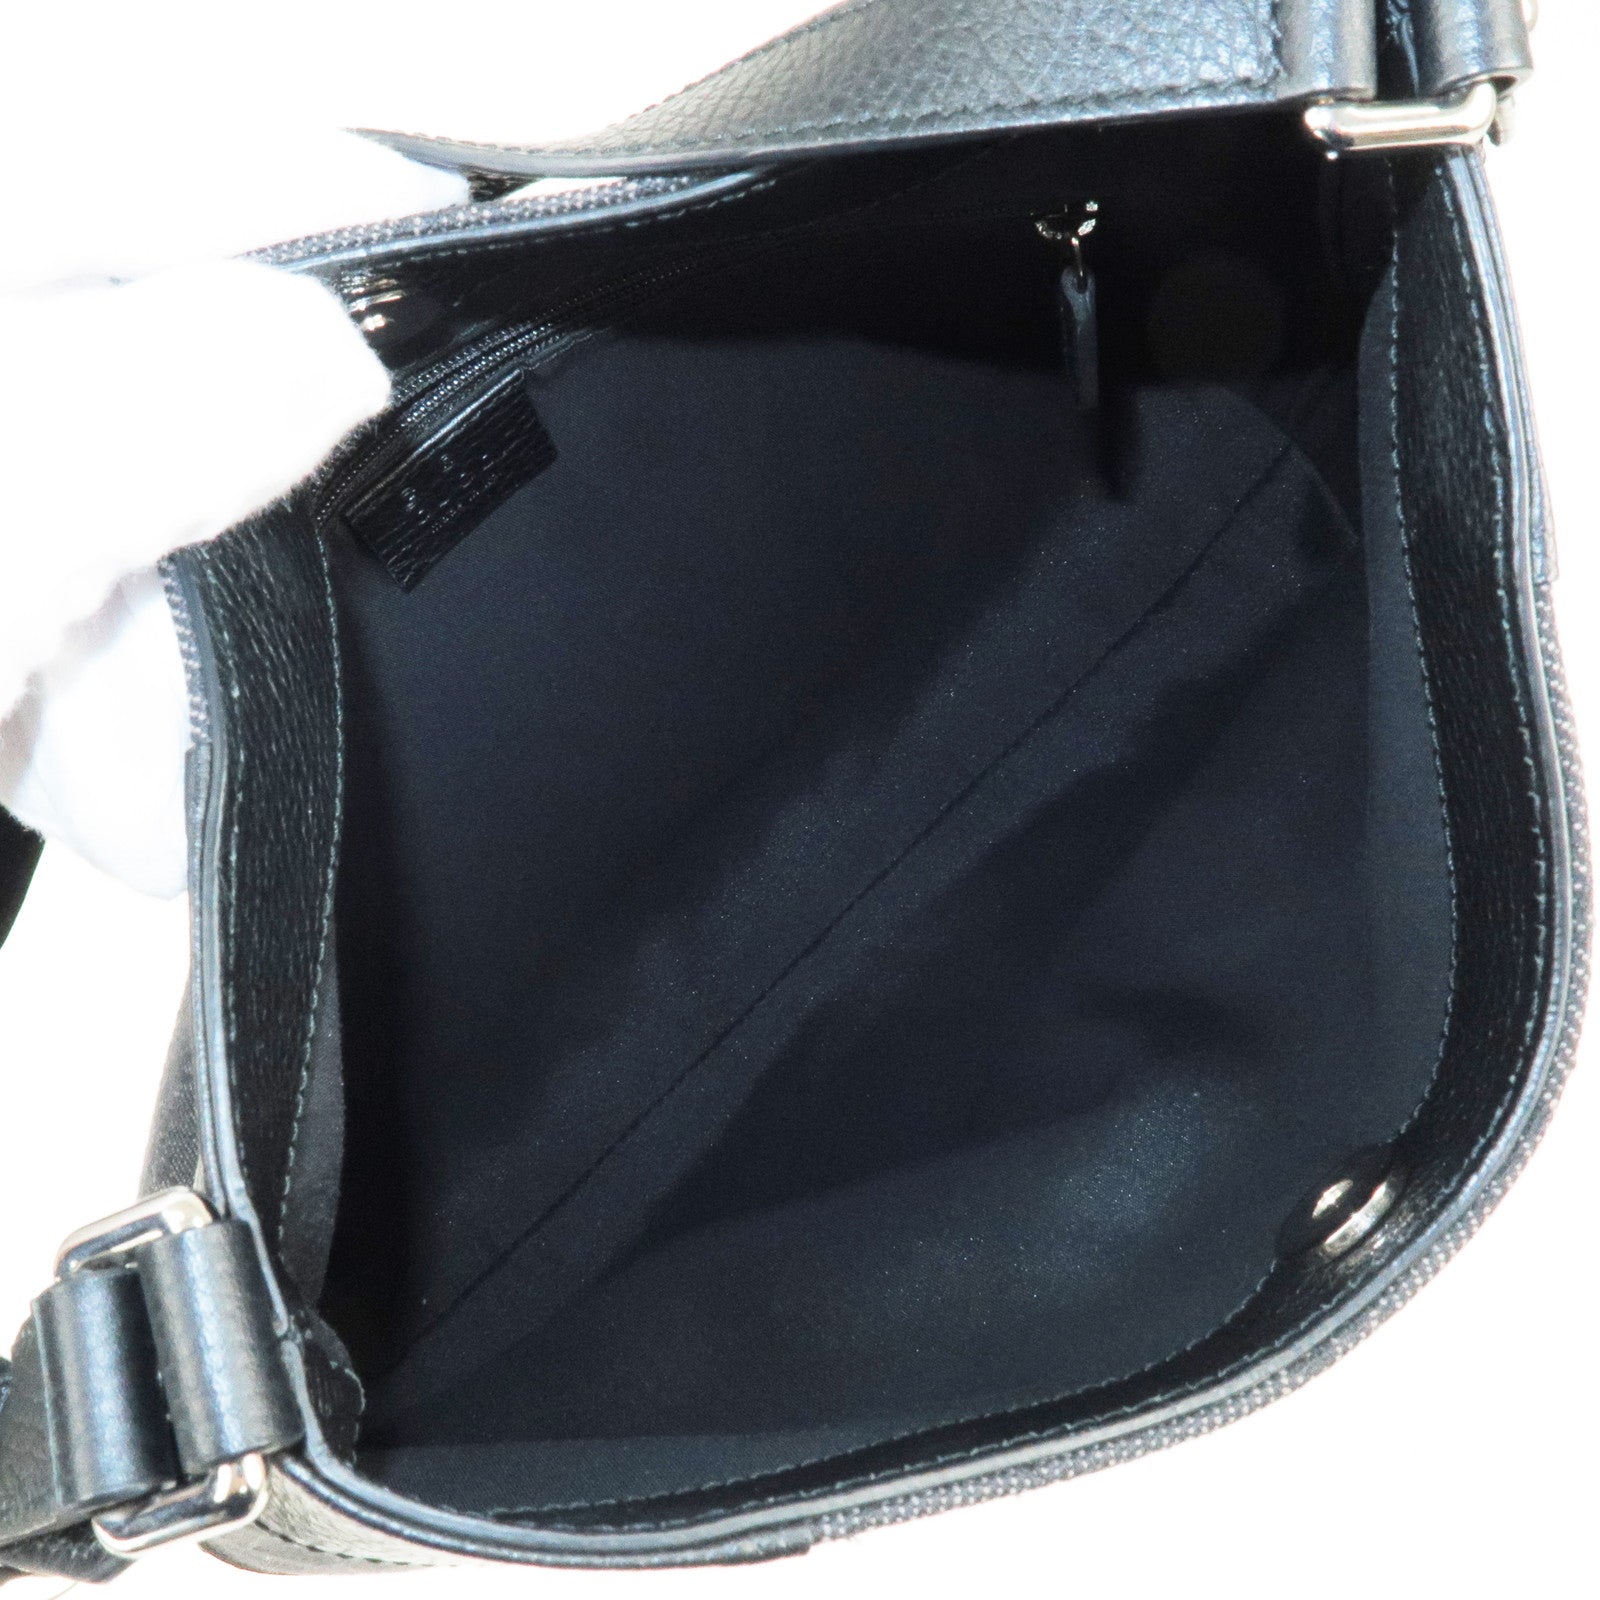 Gucci - Mini Gg-Canvas And Leather Tote Bag - Mens - Black Multi